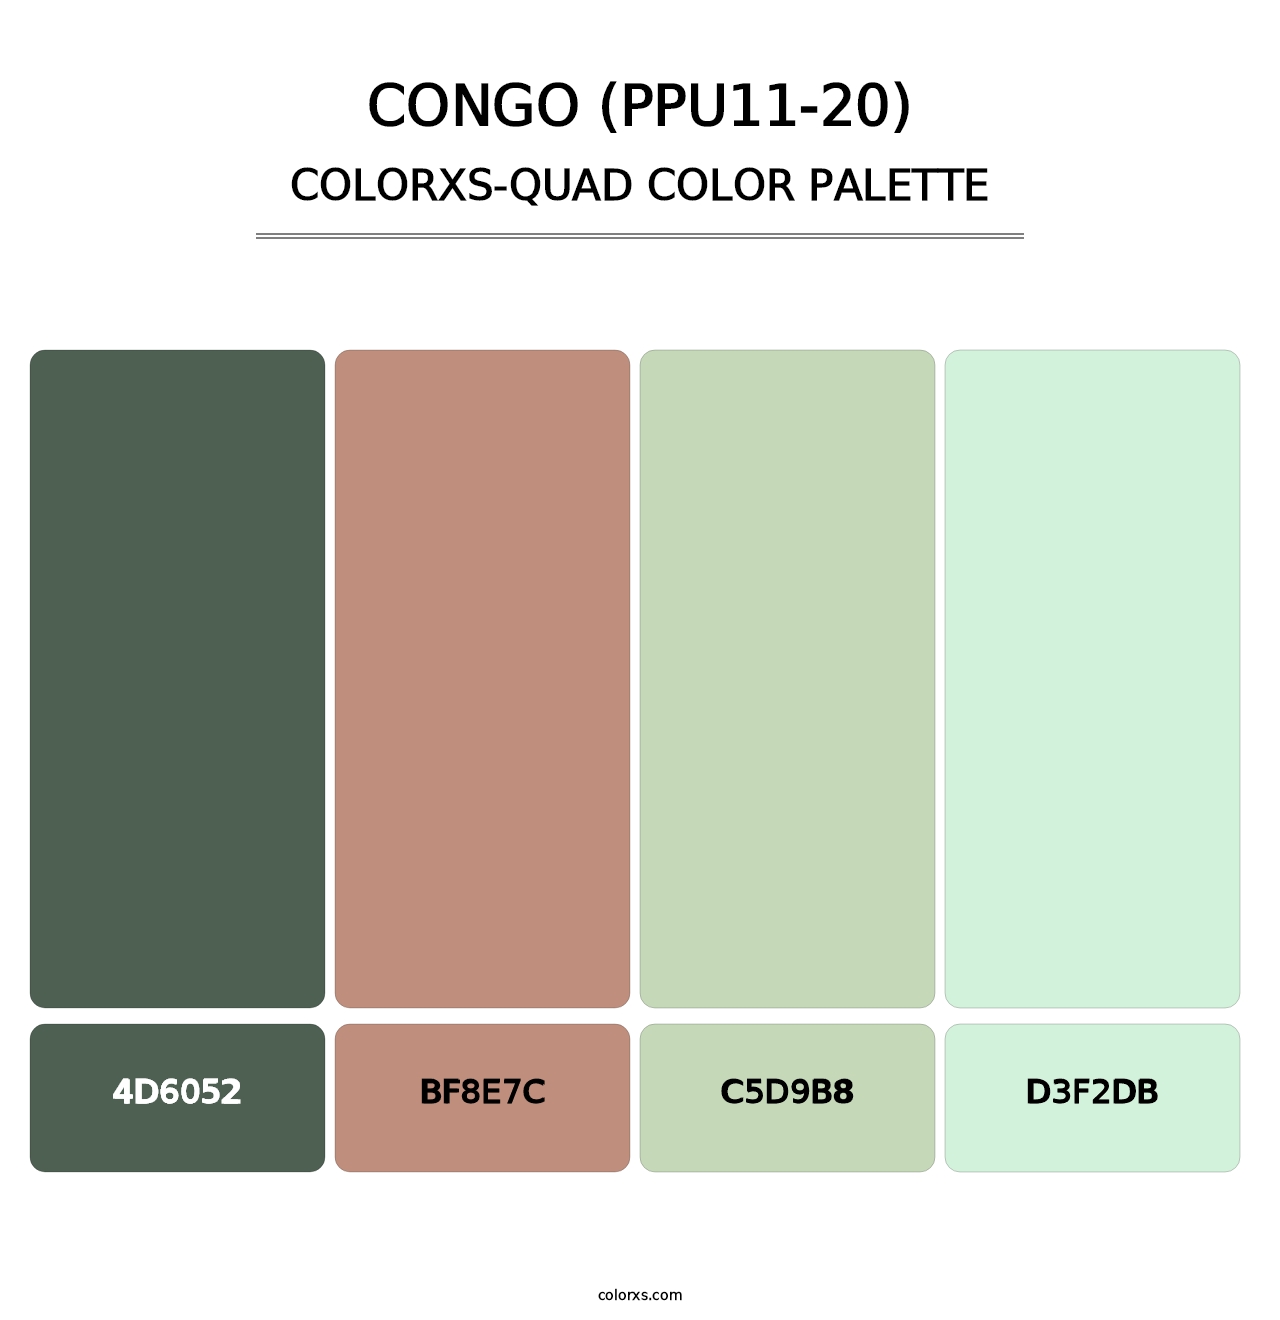 Congo (PPU11-20) - Colorxs Quad Palette